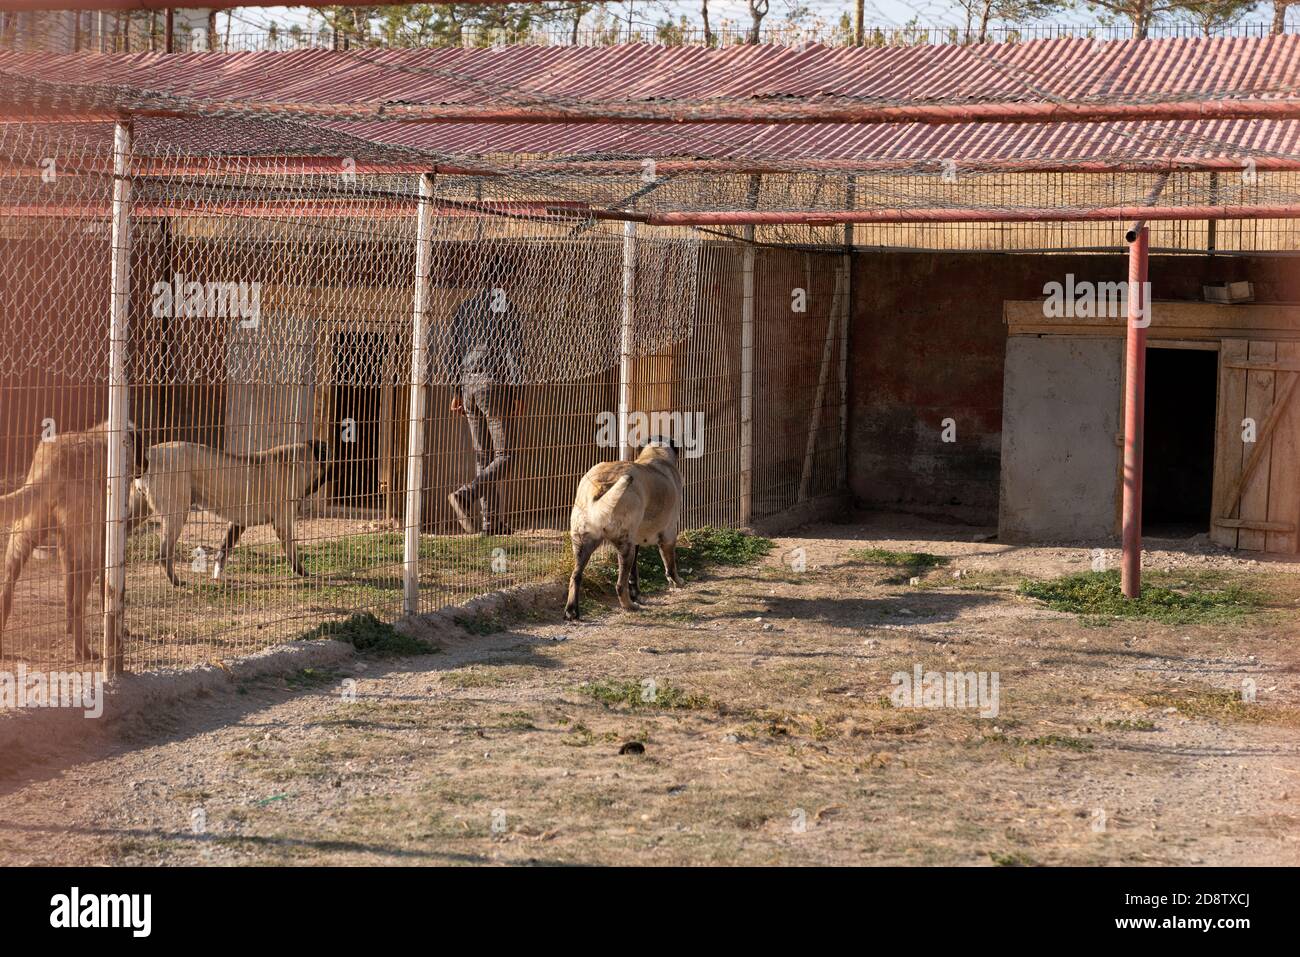 De beaux chiens de berger anatoliens (sivas kangal kopek/kopegi) et leur gardien sont derrière une cage dans une ferme de chiens dans la ville de Kangal, Sivas Turquie. Banque D'Images